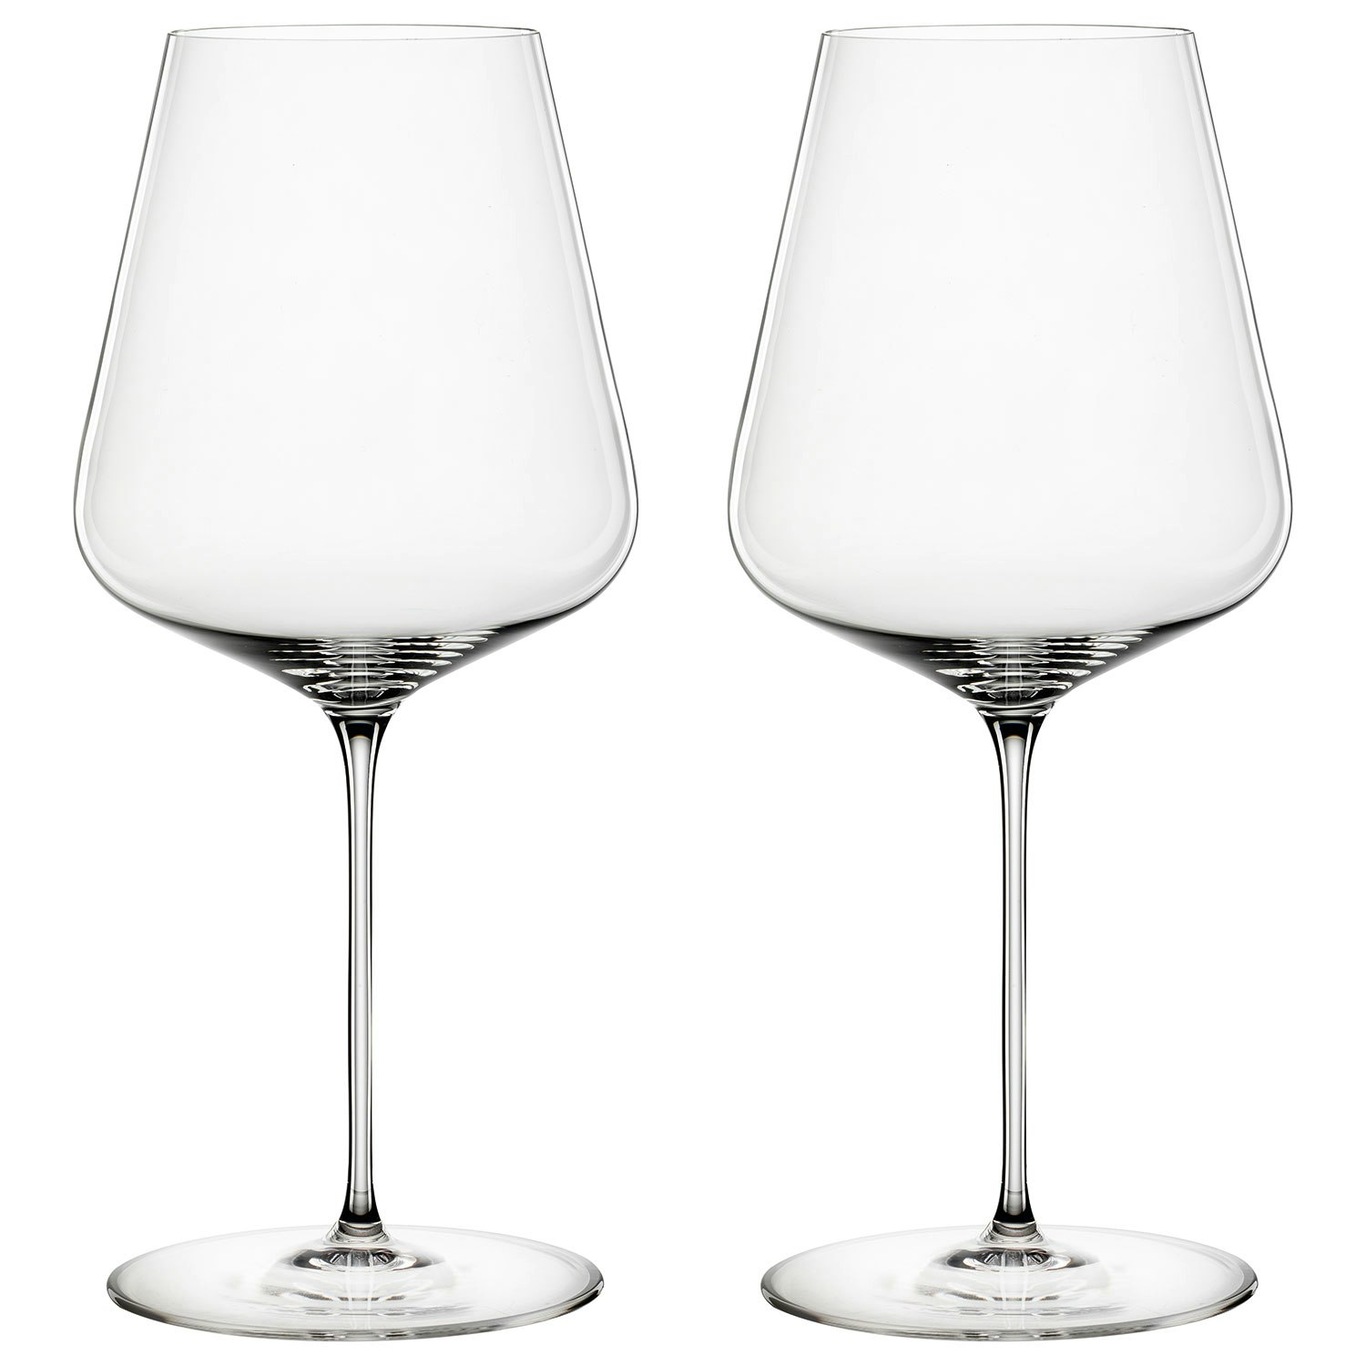 https://royaldesign.com/image/2/spiegelau-definition-bordeaux-wine-glass-75-cl-2-pack-0?w=800&quality=80